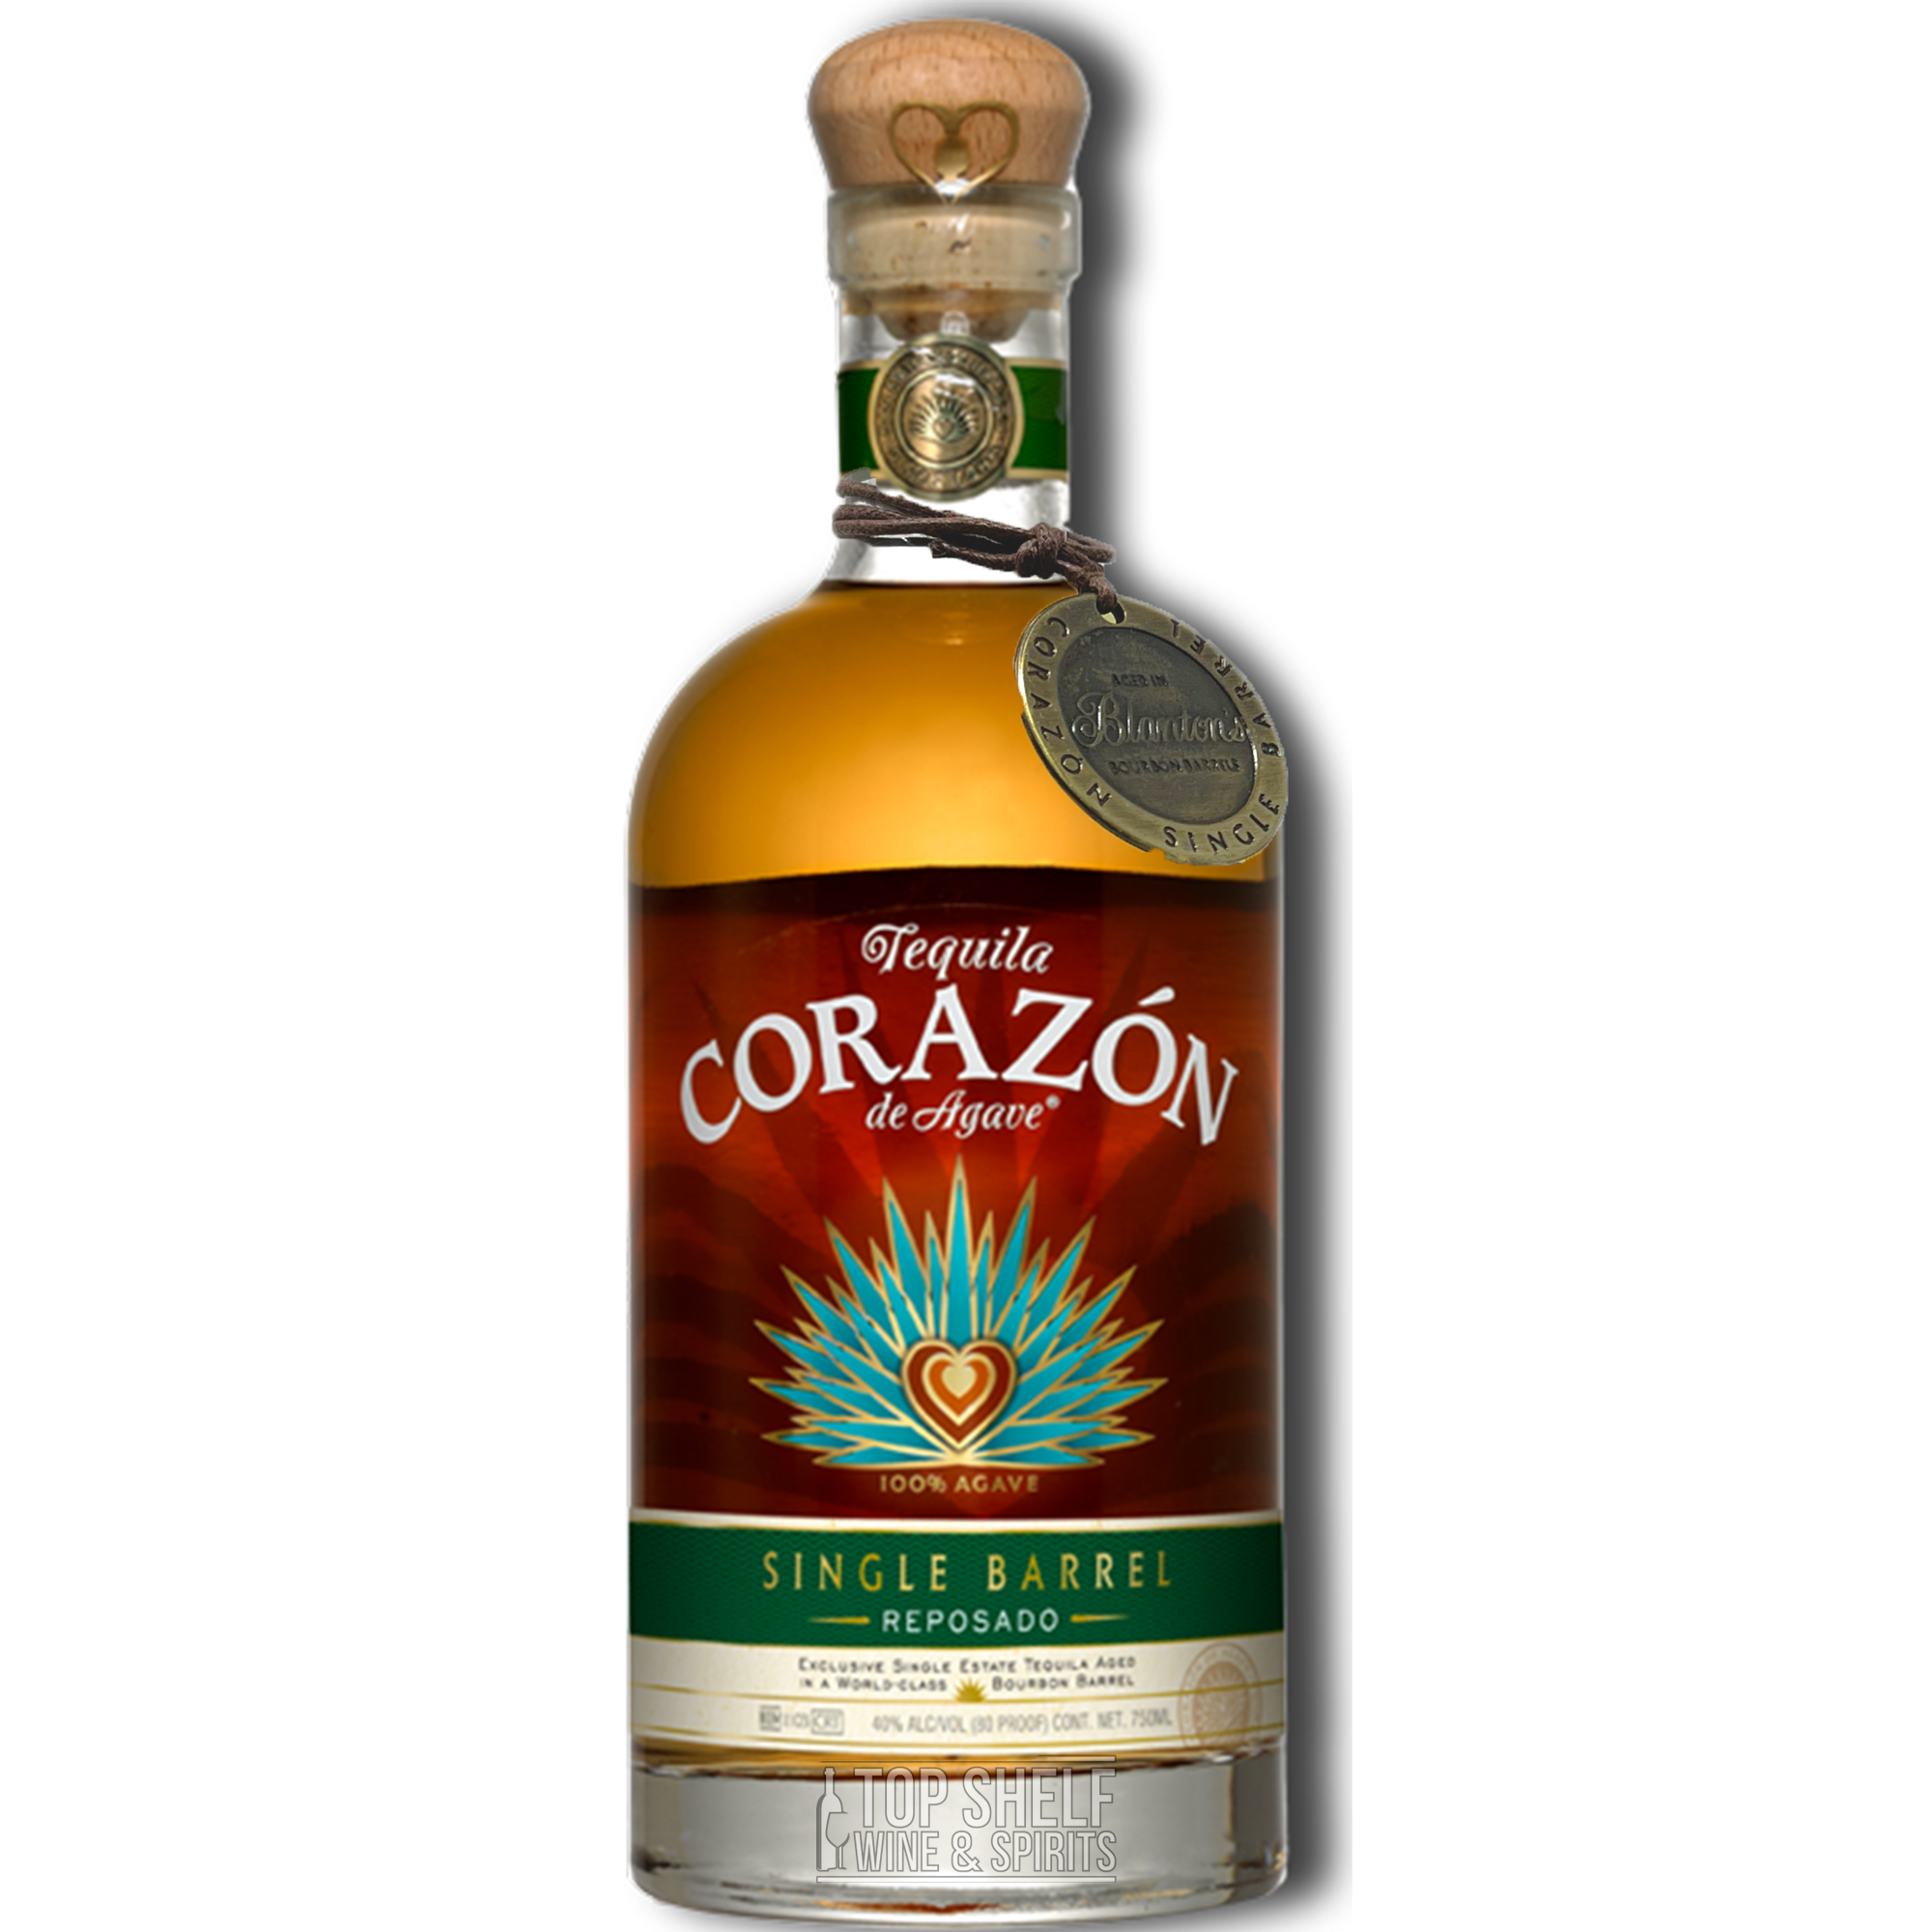 Corazon Reposado Blanton's Barrel Finish Tequila (Private Selection)